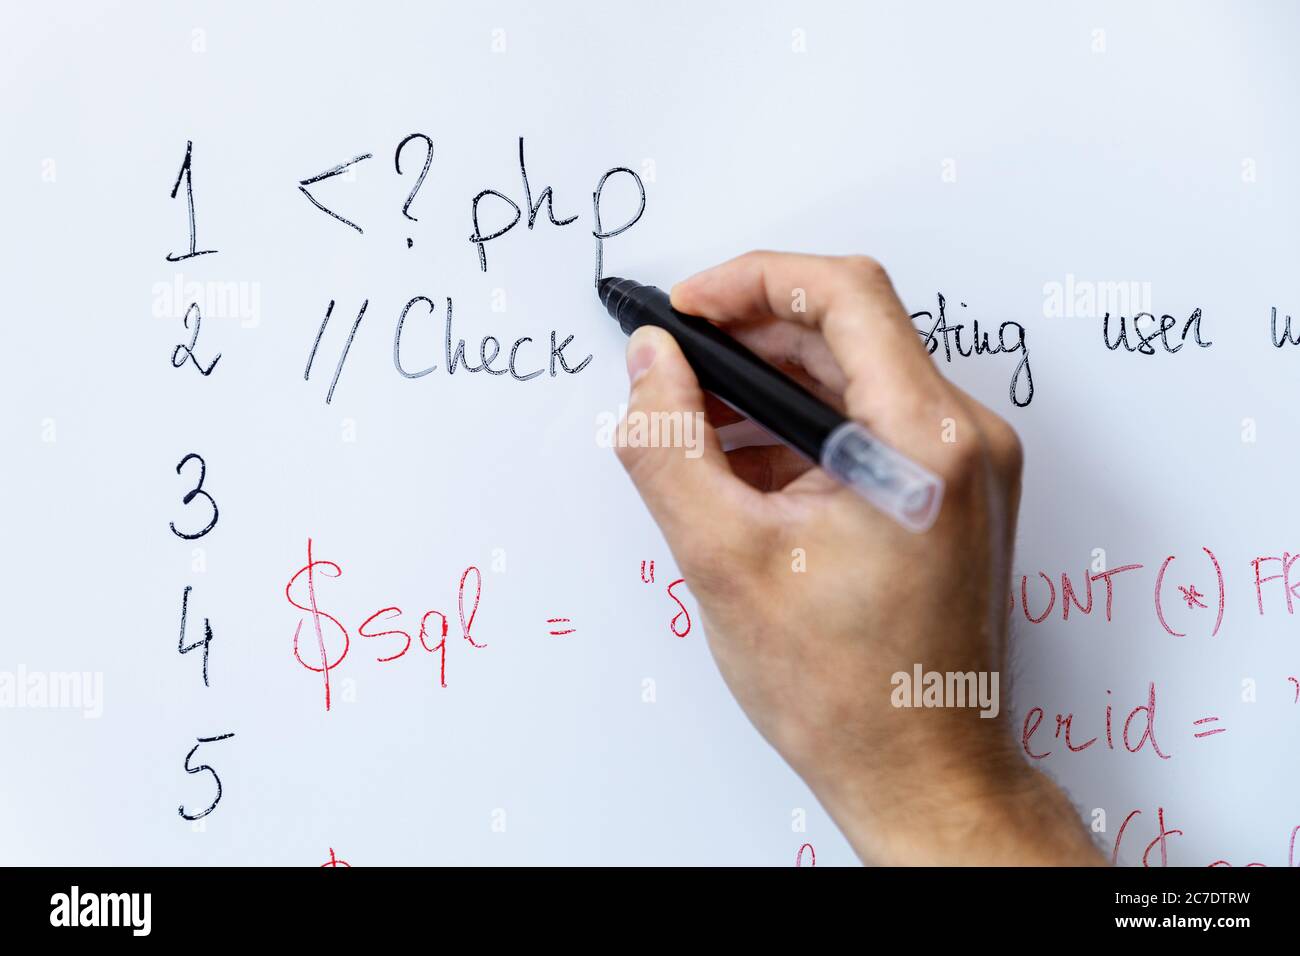 Programmierer Bildung und Web-Entwicklung - Hand mit Marker schreiben php Programmiercode auf Whiteboard Stockfoto